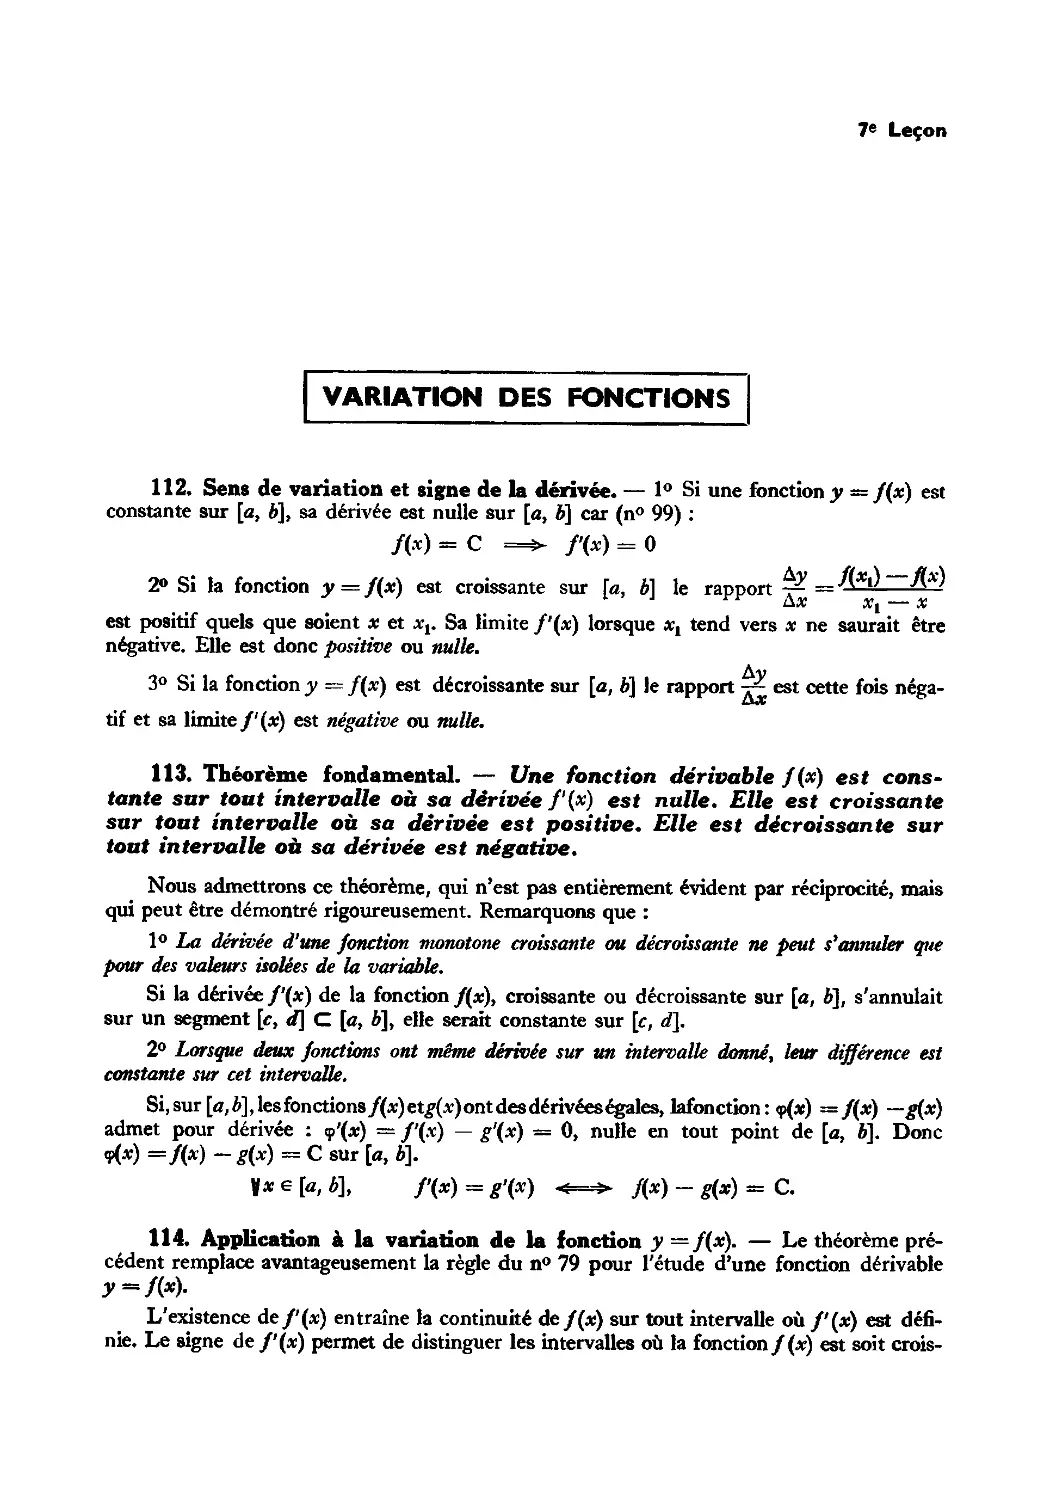 Variation des fonctions
113. Théorème fondamental